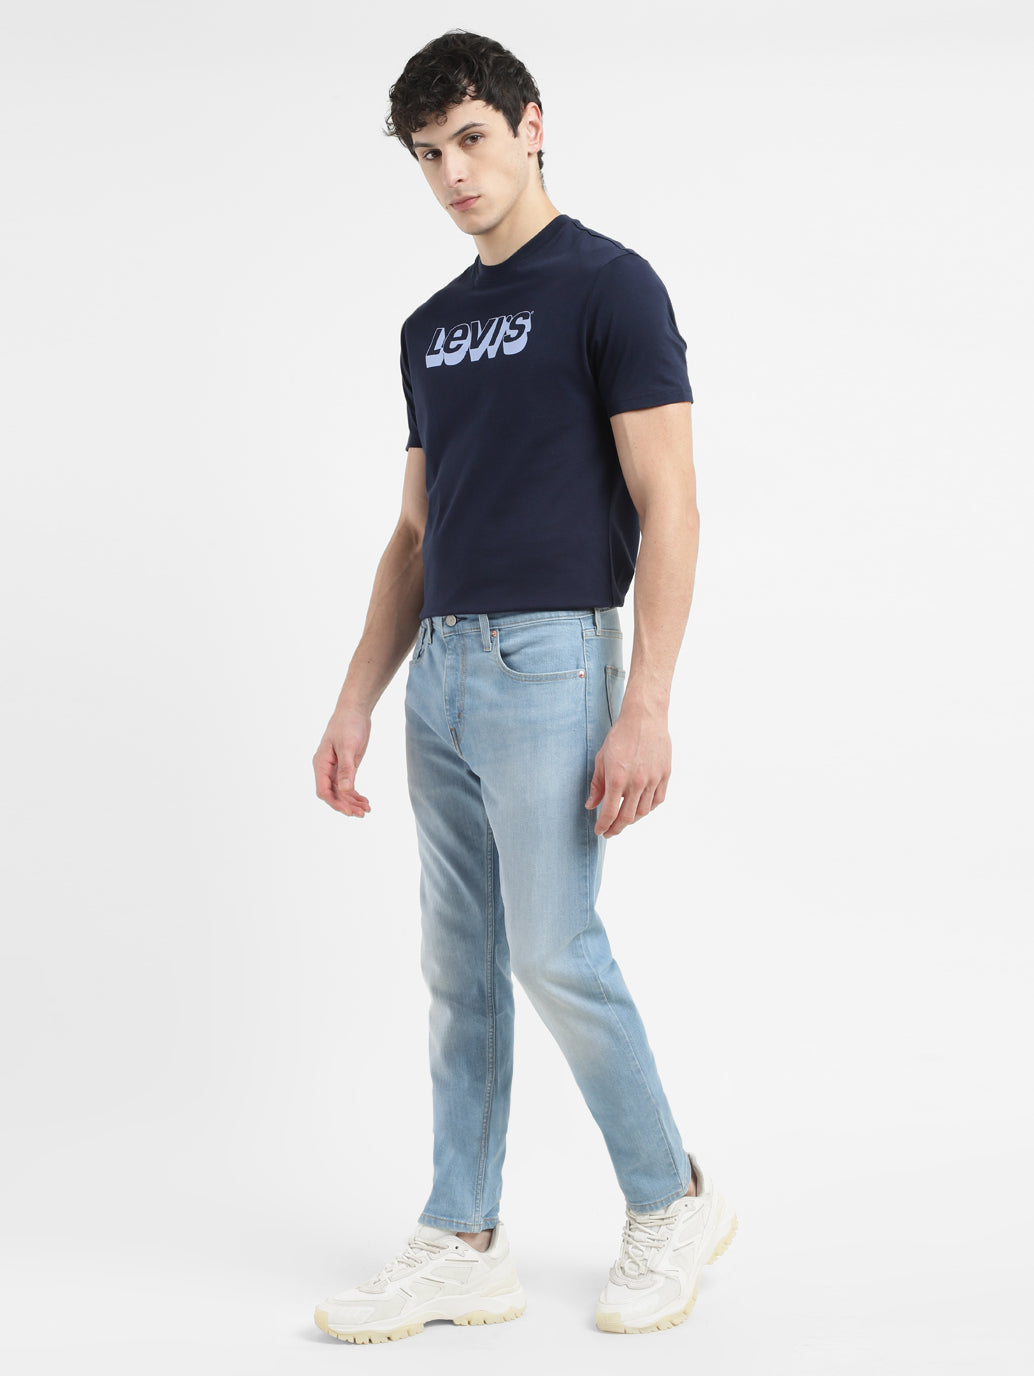 Men's 512 Light Blue Slim Tapered Fit Jeans